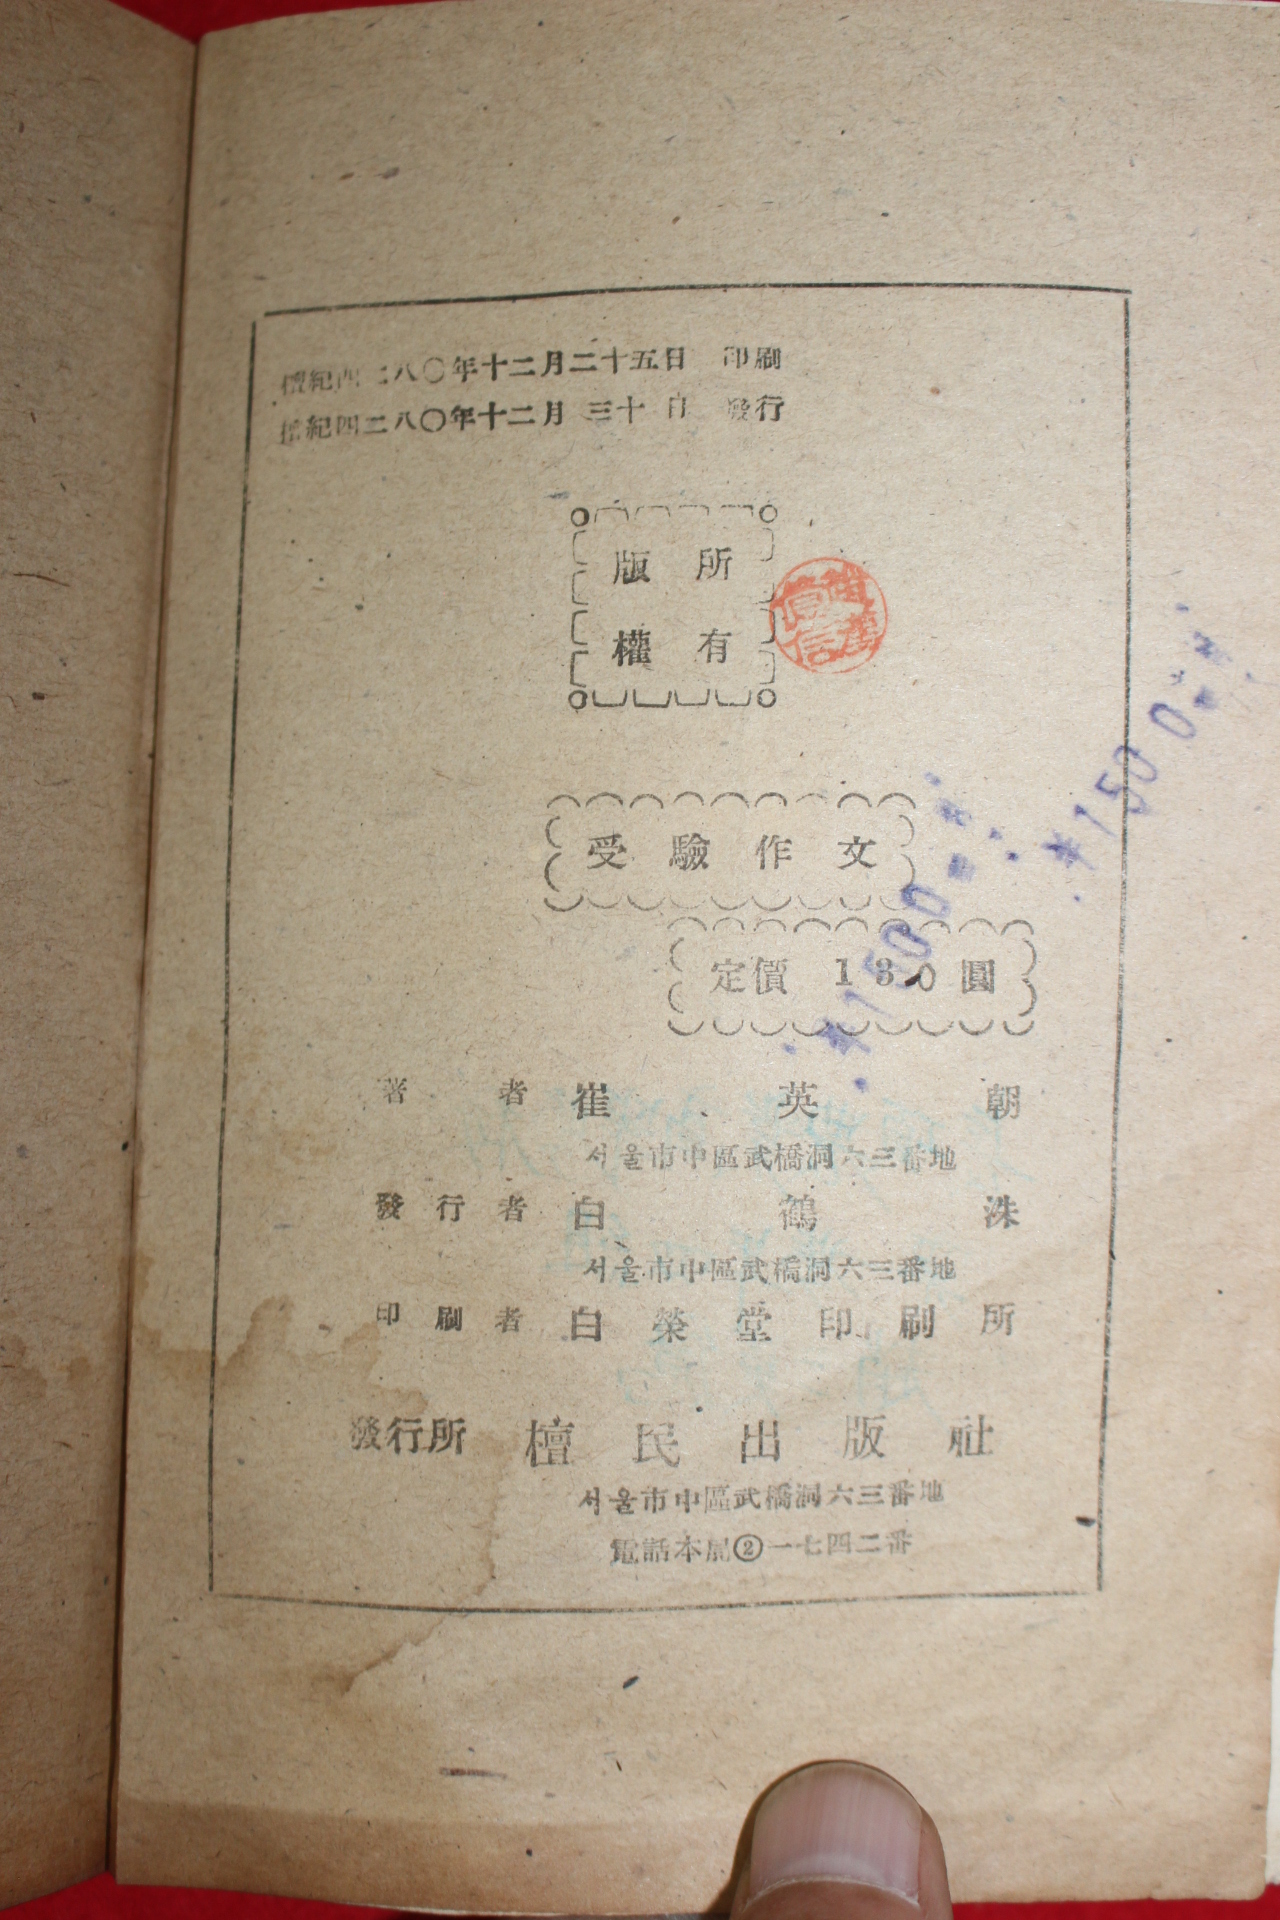 1947년 최영조(崔英朝) 수험작문연구